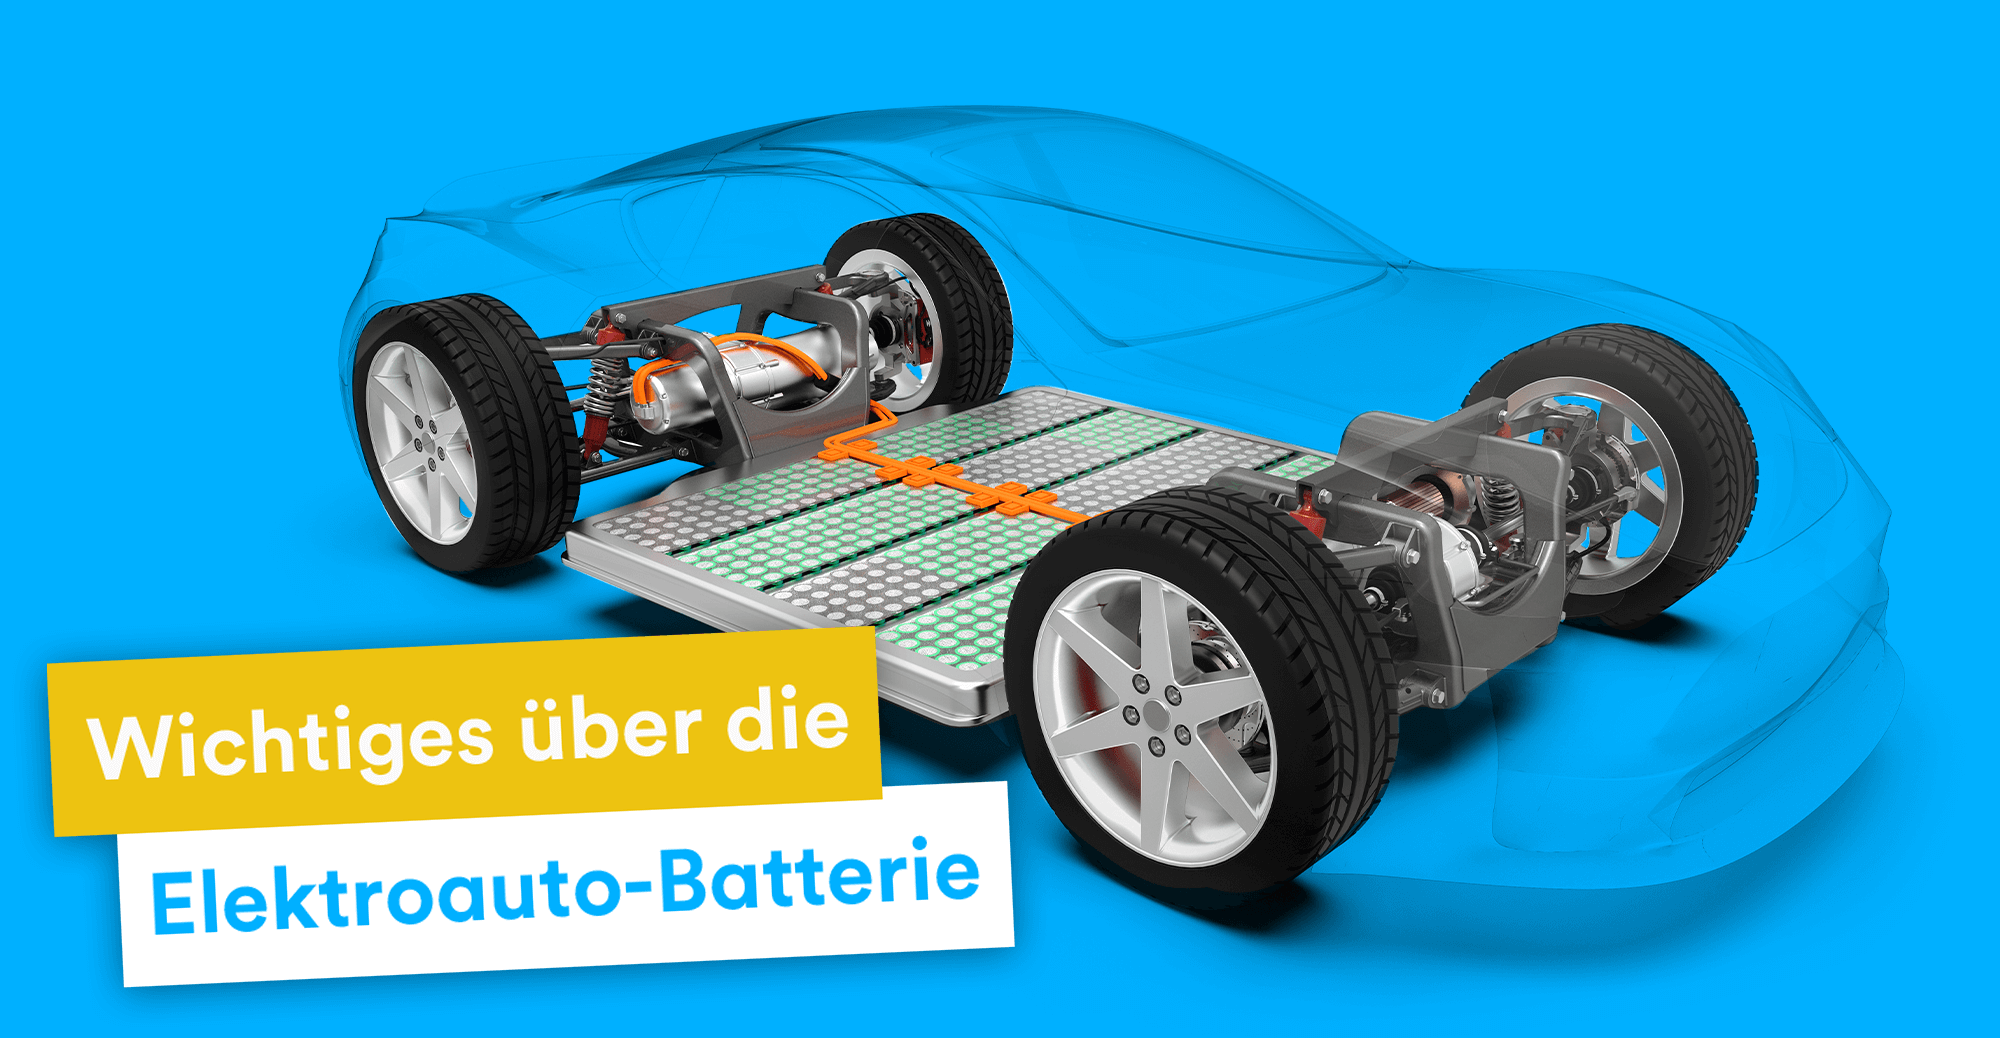 TH Mittelhessen will Lebensdauer von Elektroauto-Batterien verlängern